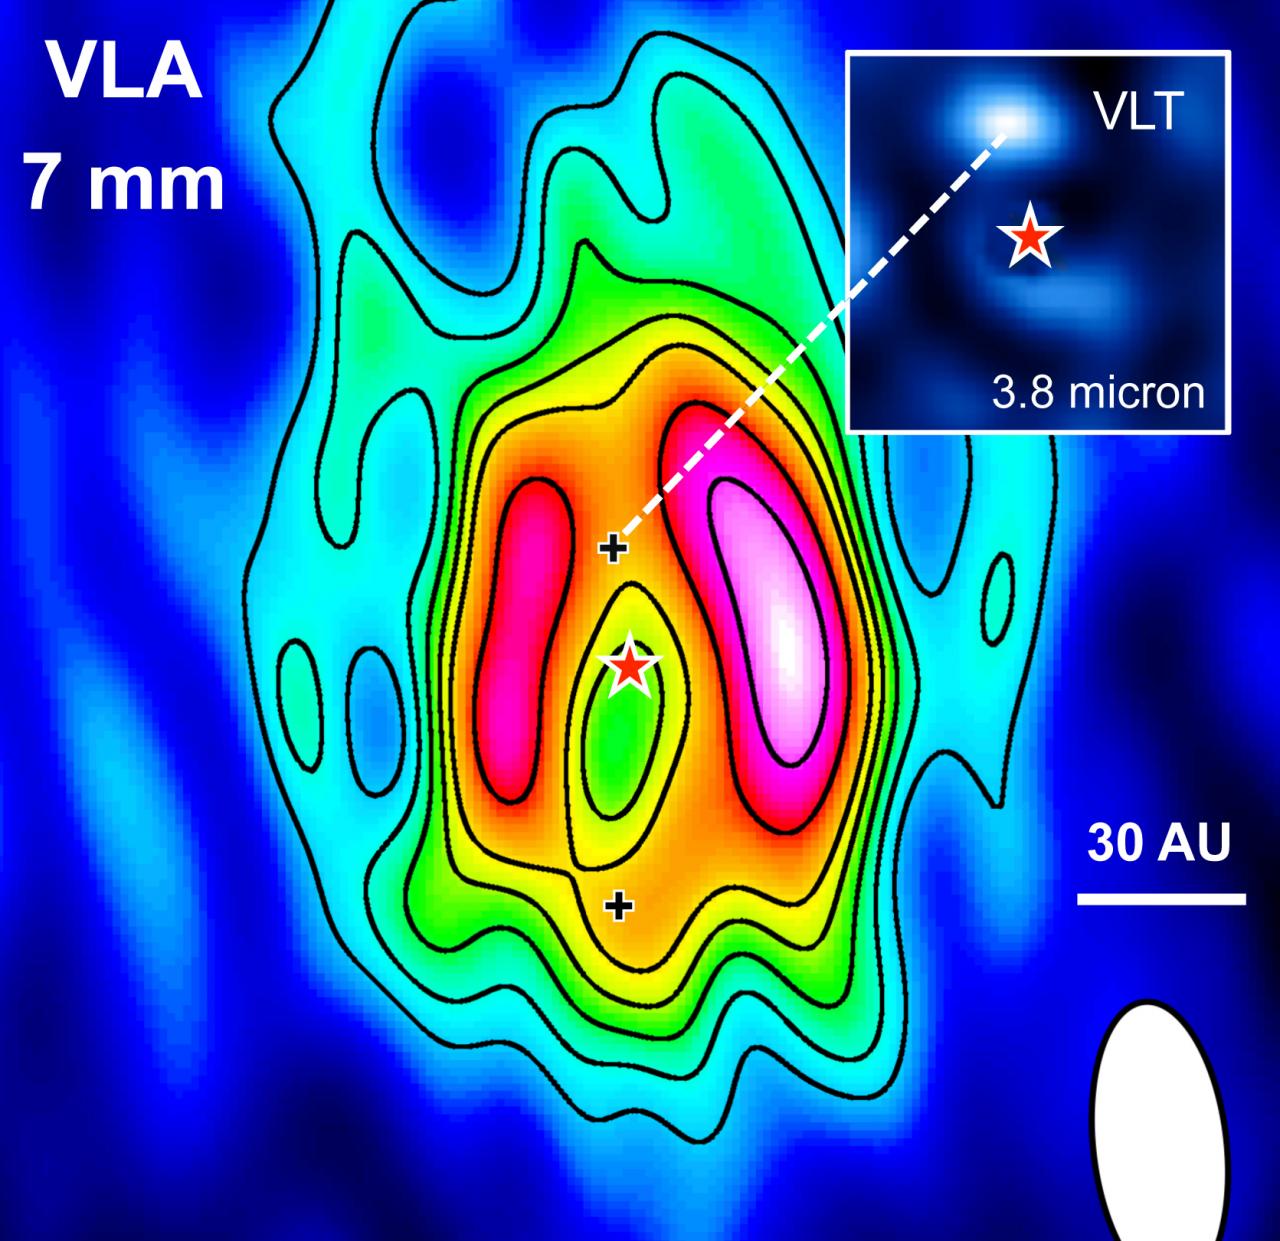 Imagen del disco de polvo en torno a la estrella HD 169142 obtenida con el radiotelescopio VLA a 7 mm. Las cruces (+) señalan las posiciones de los posibles protoplanetas. En el recuadro de la parte superior derecha se muestra, a la misma escala, la imagen obtenida con el VLT a 3.8 micras, de la fuente infrarroja brillante situada en la cavidad interna del disco.